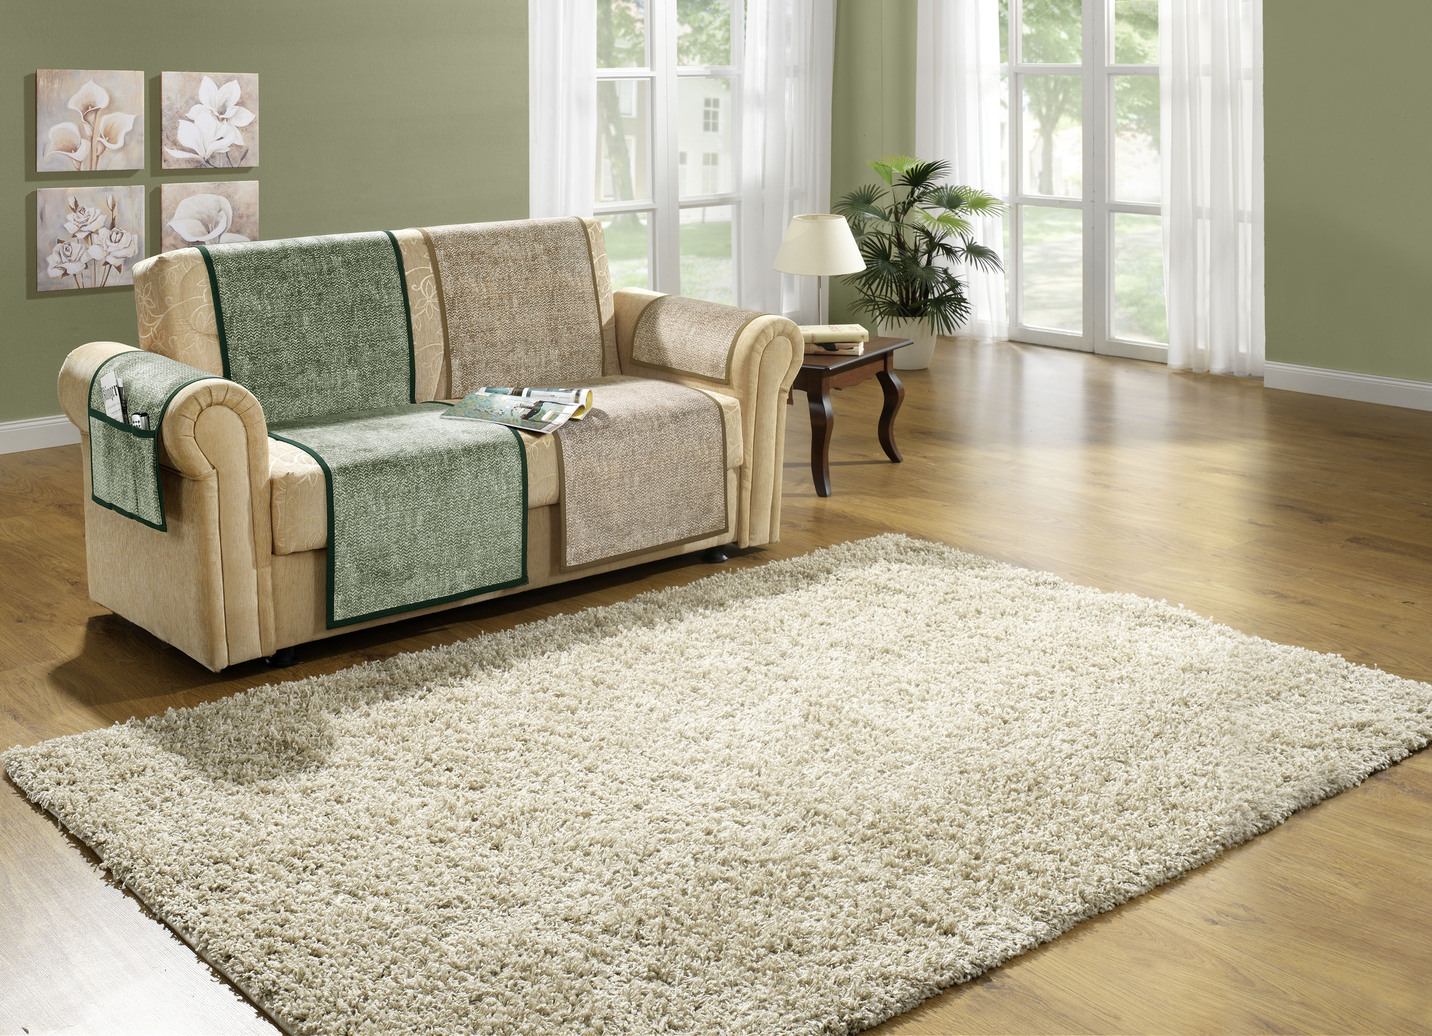 Sessel-,Couch- und Armlehnenschoner mit Anti-Rutsch-Beschichtung, Qualität 1, Größe 865 (2 Armlehnenschoner 38x 55 cm), Grün von BADER